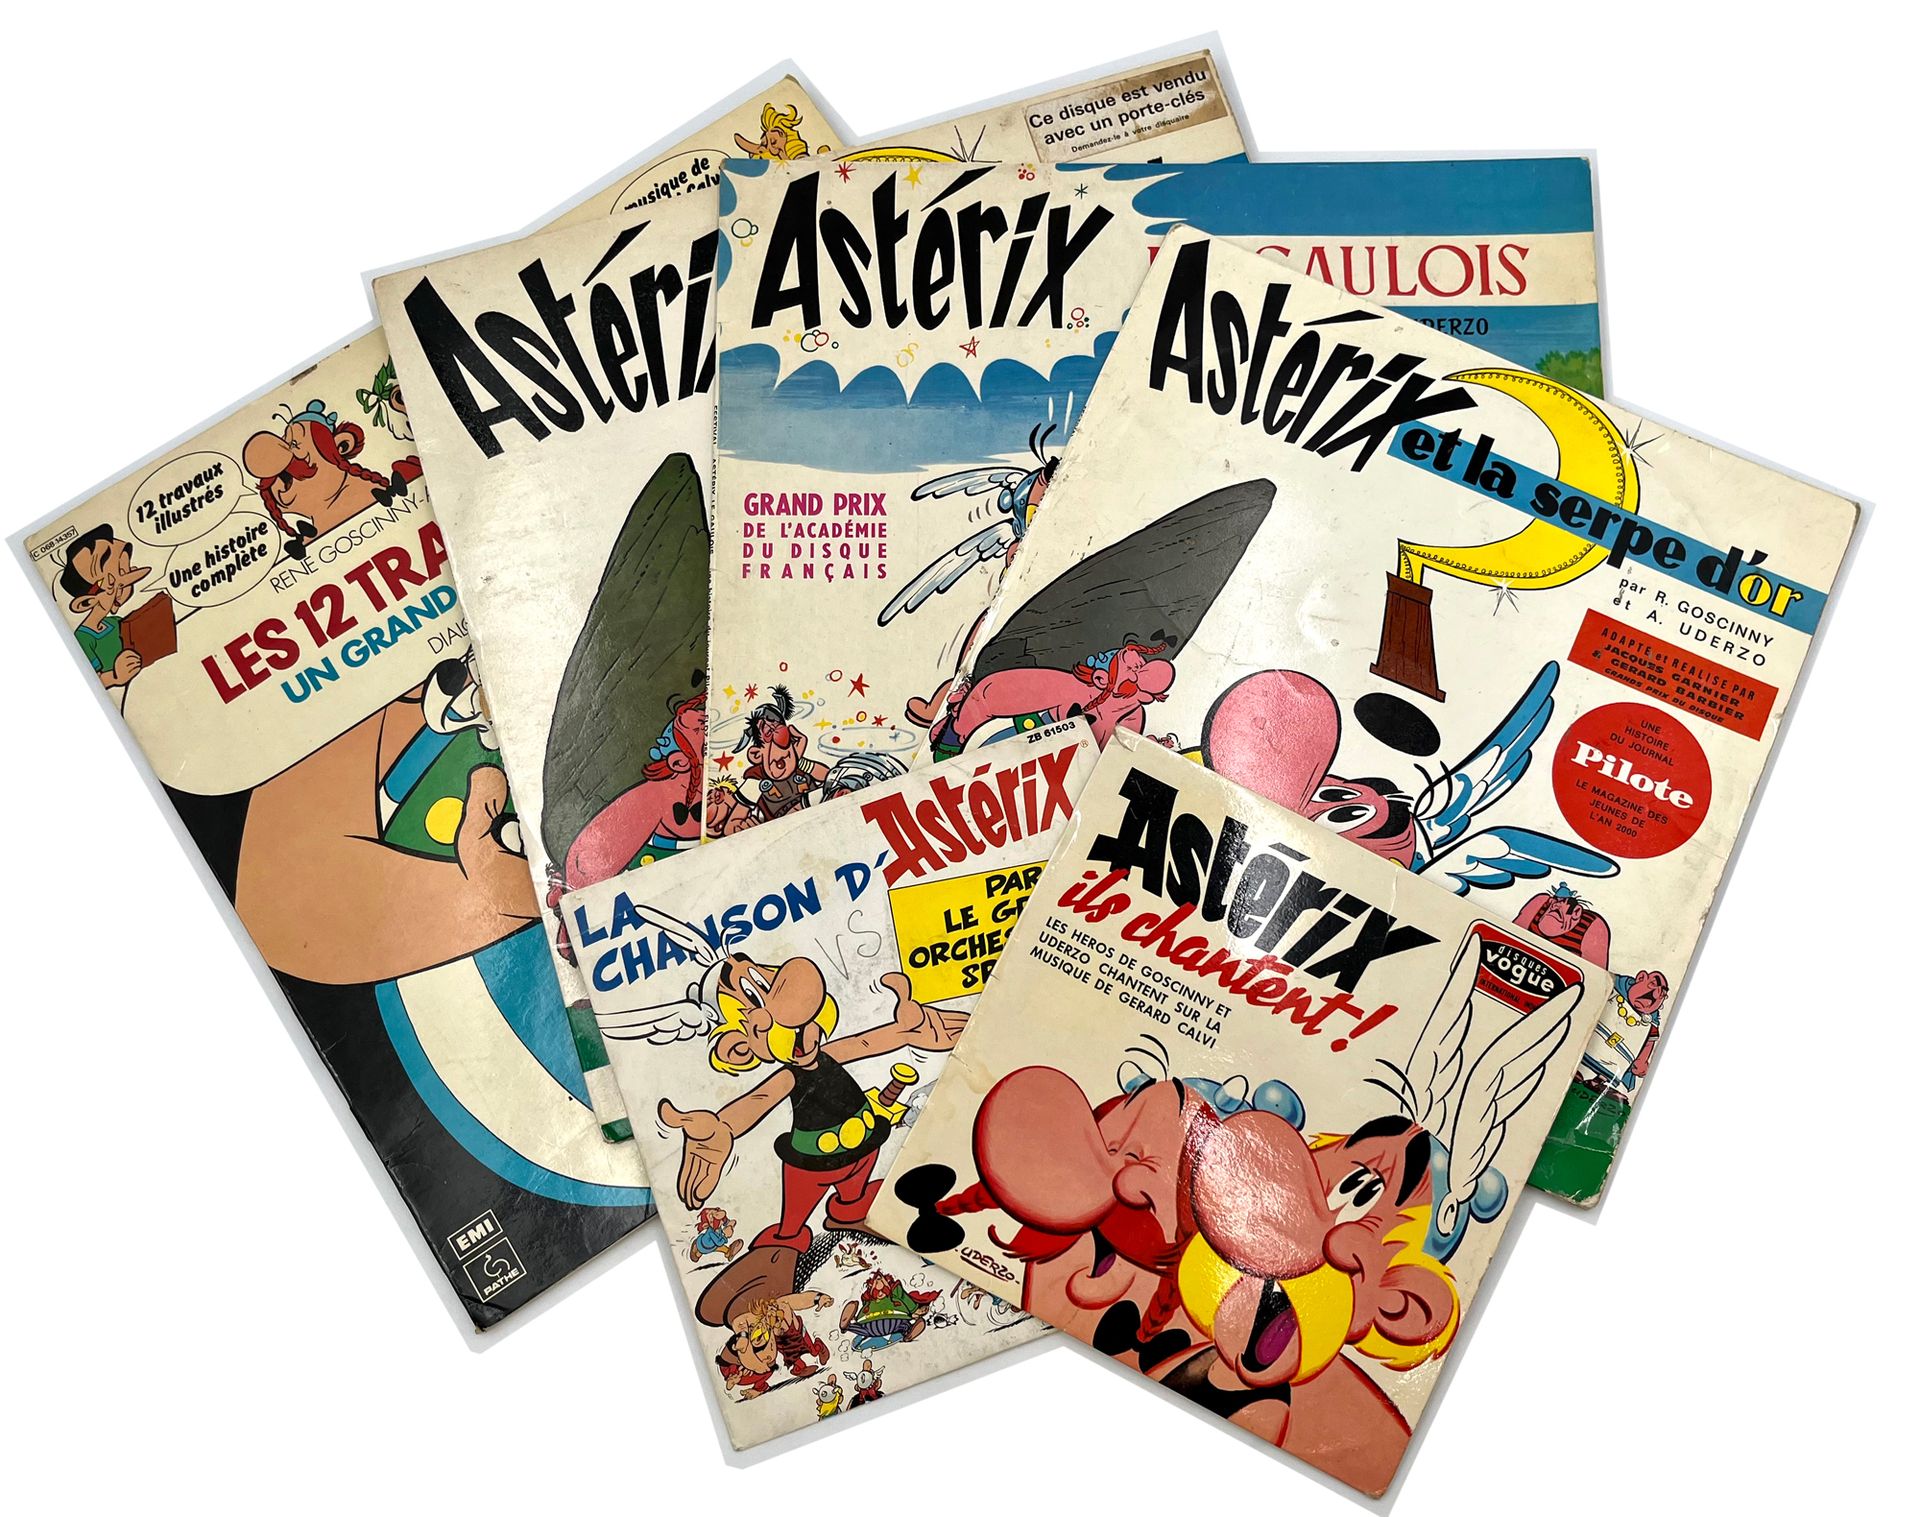 UDERZO Set di 6 dischi di Asterix: Ils chantent (45T, 1966), La chanson d'Astéri&hellip;